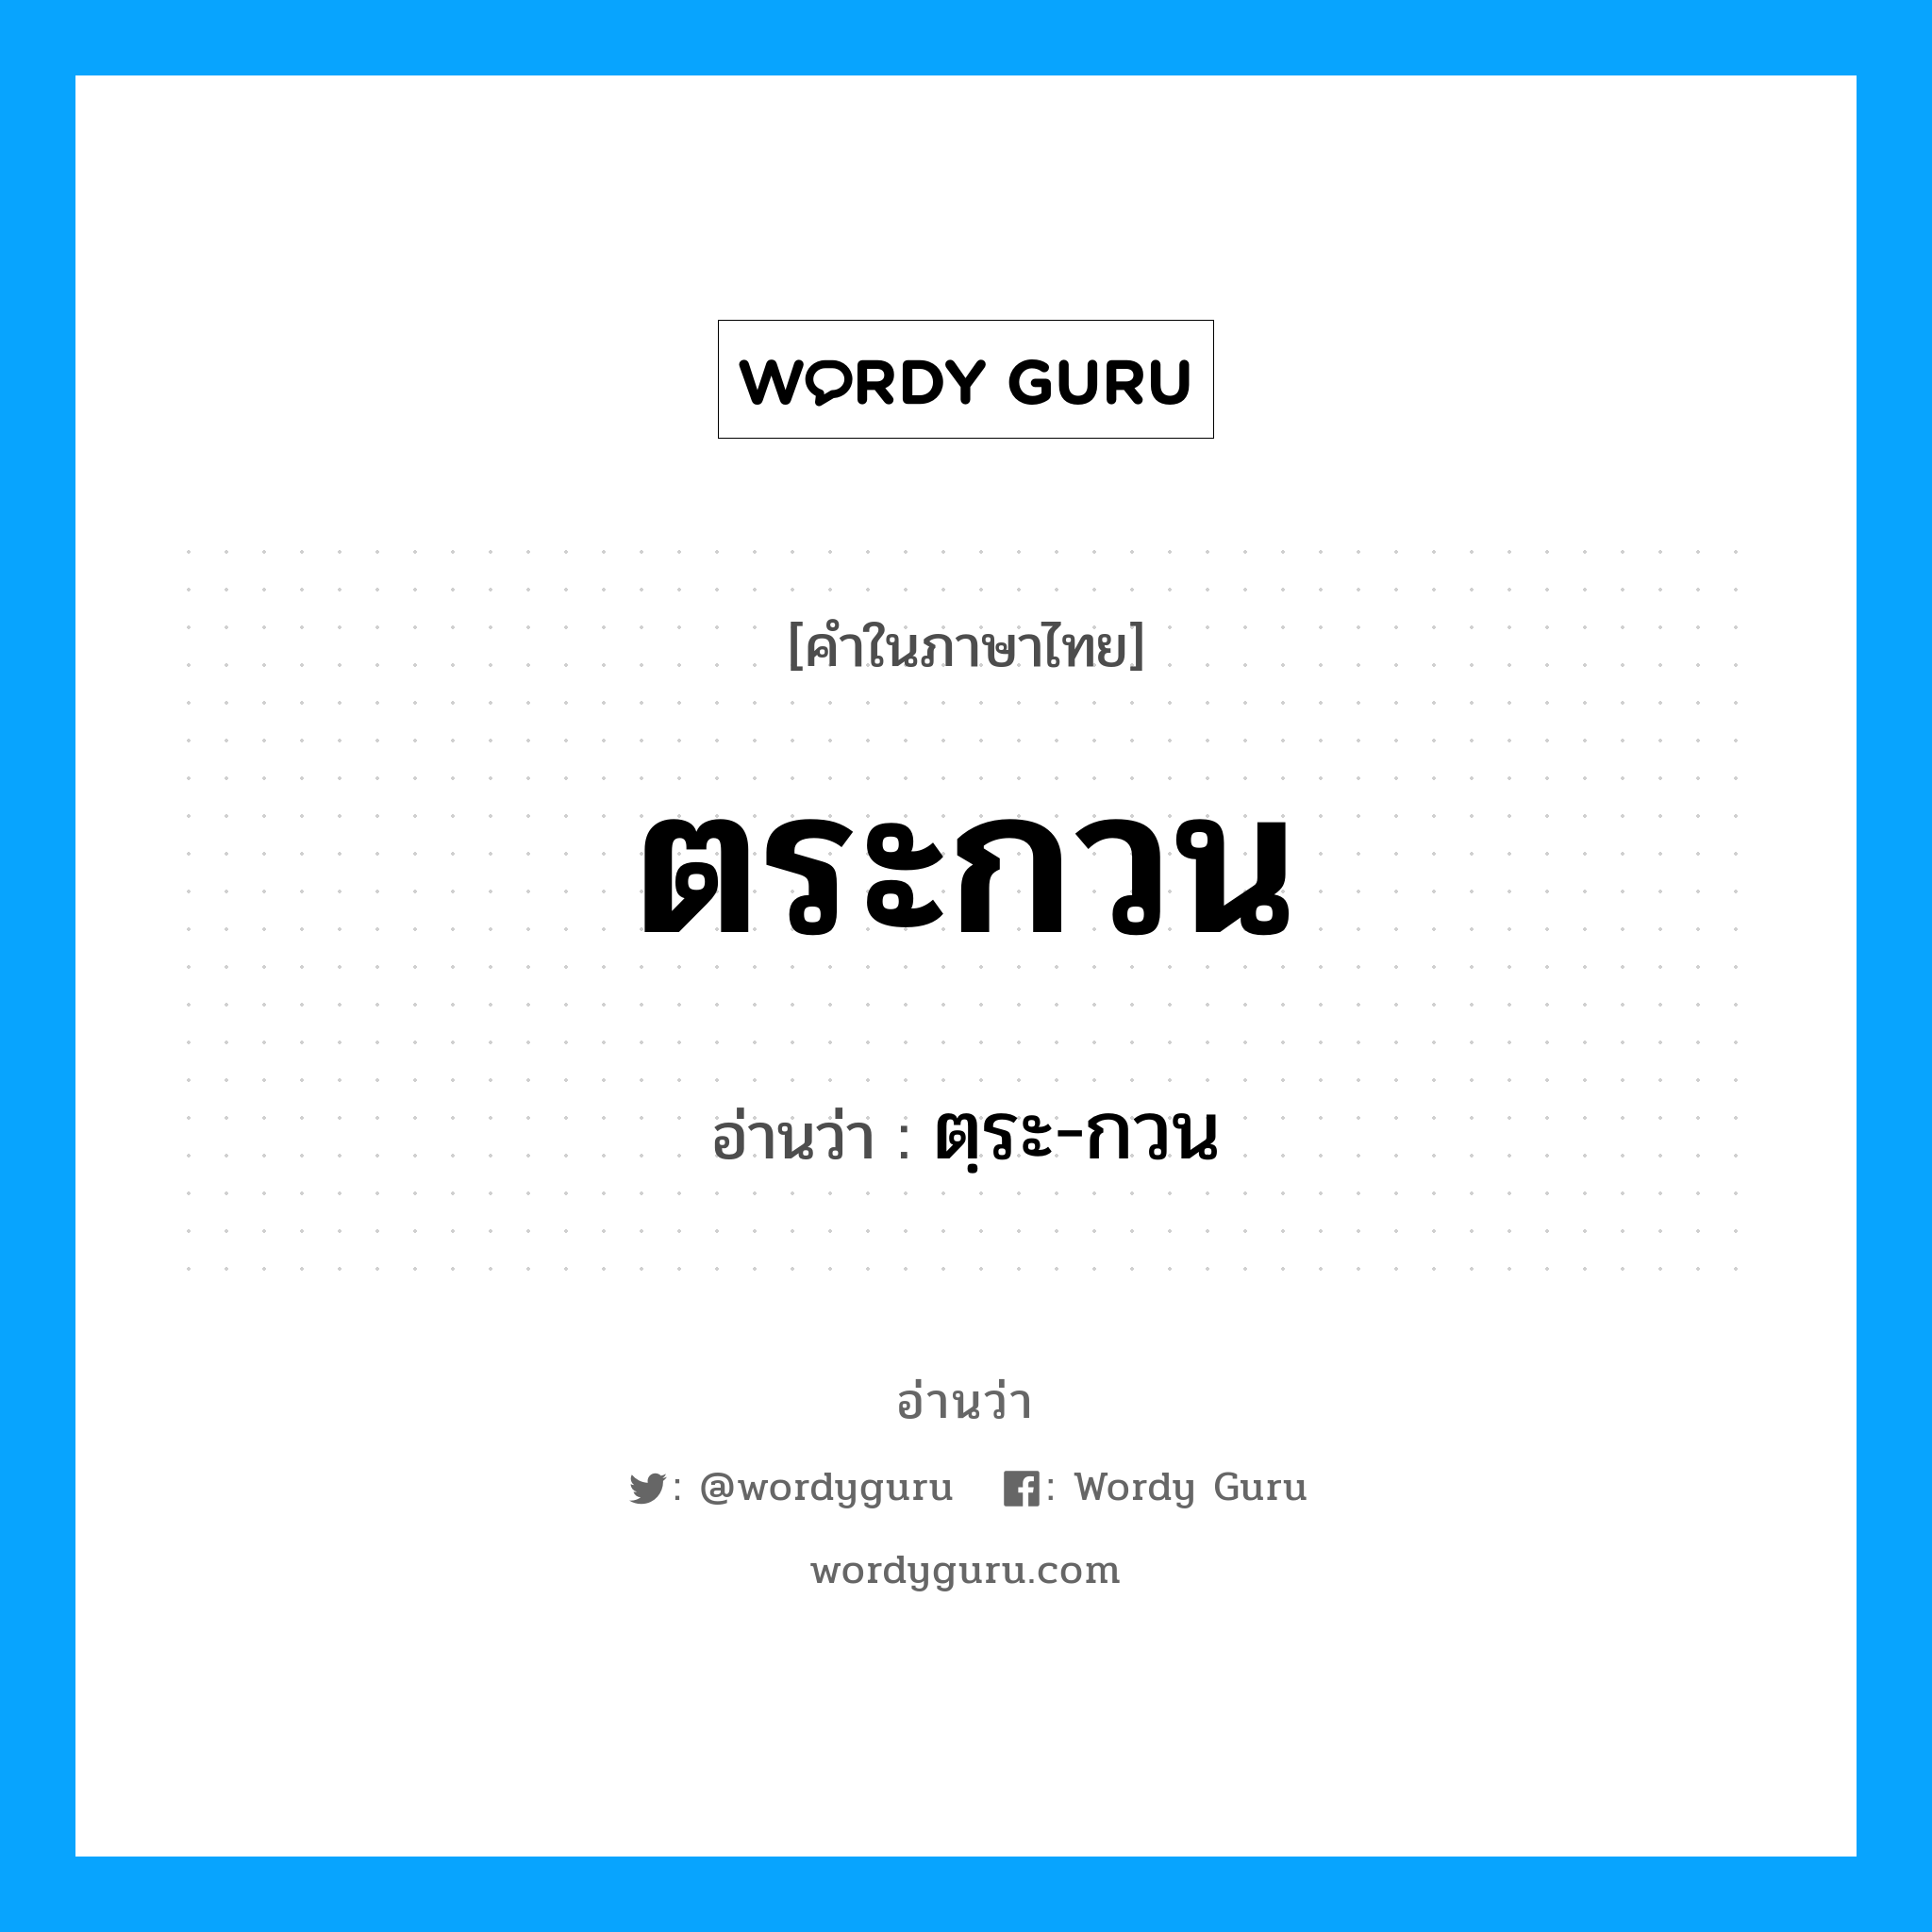 ตฺระ-กวน เป็นคำอ่านของคำไหน?, คำในภาษาไทย ตฺระ-กวน อ่านว่า ตระกวน